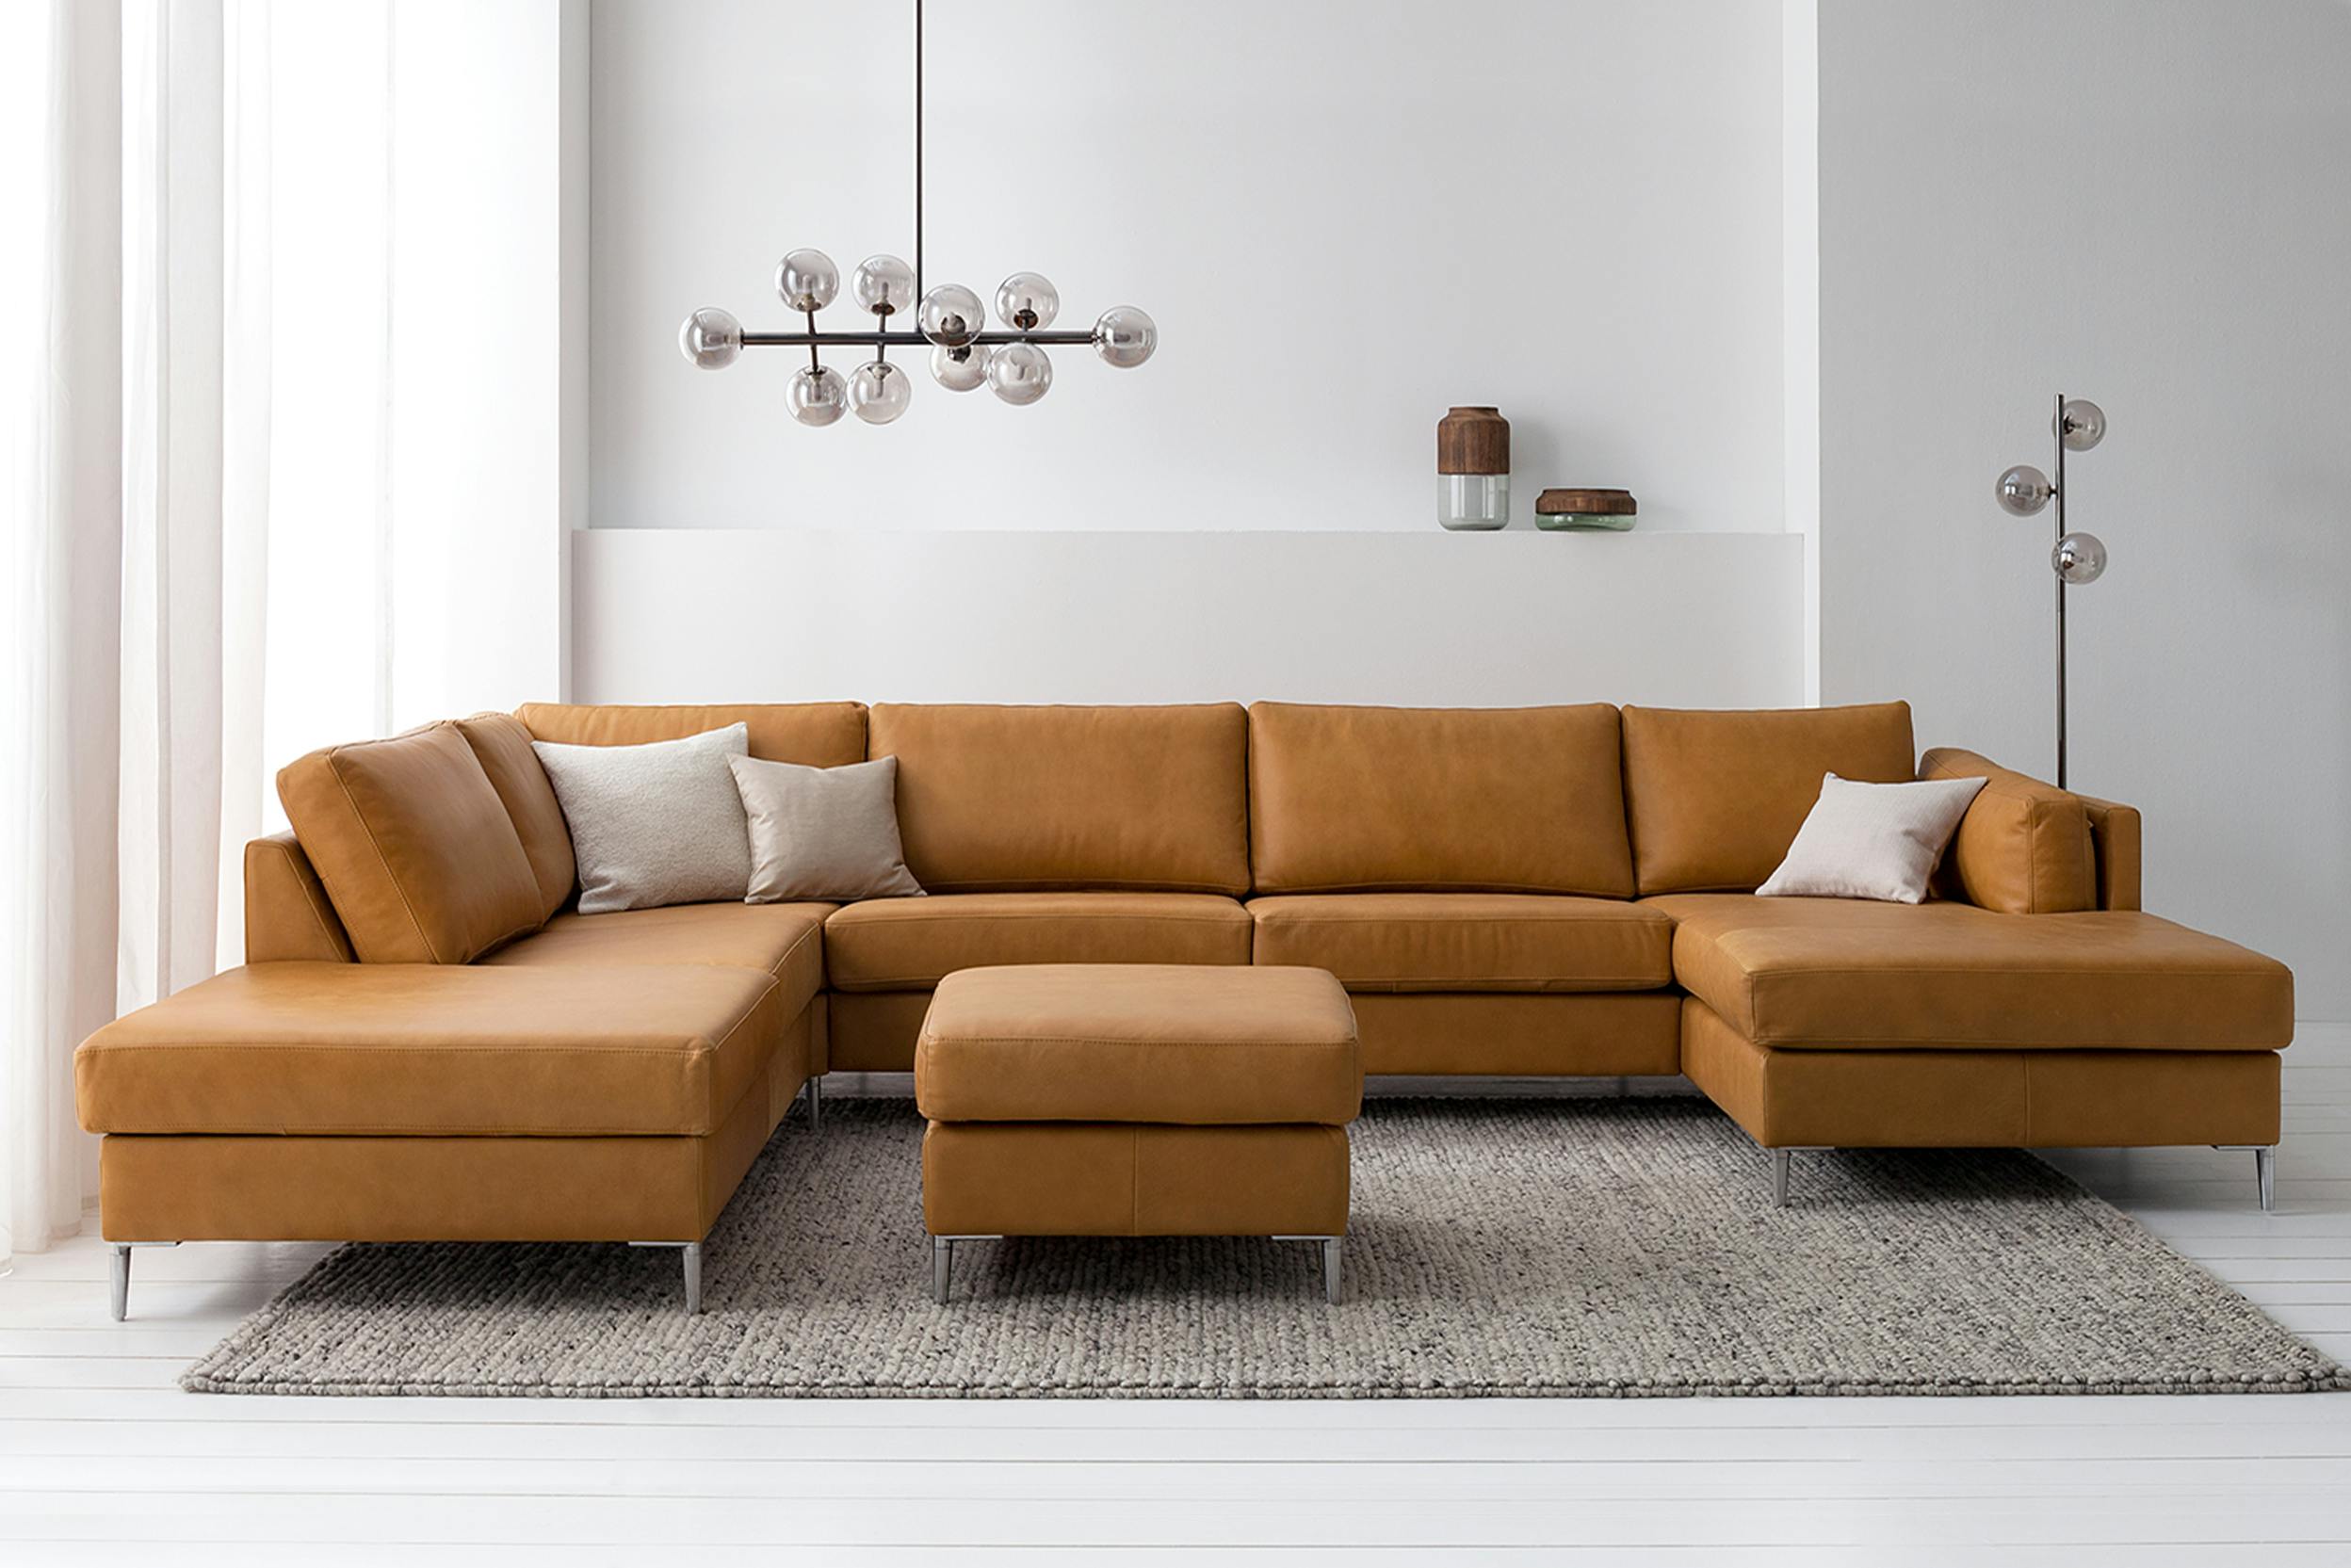 Welches Material Ist Besser Fürs Sofa